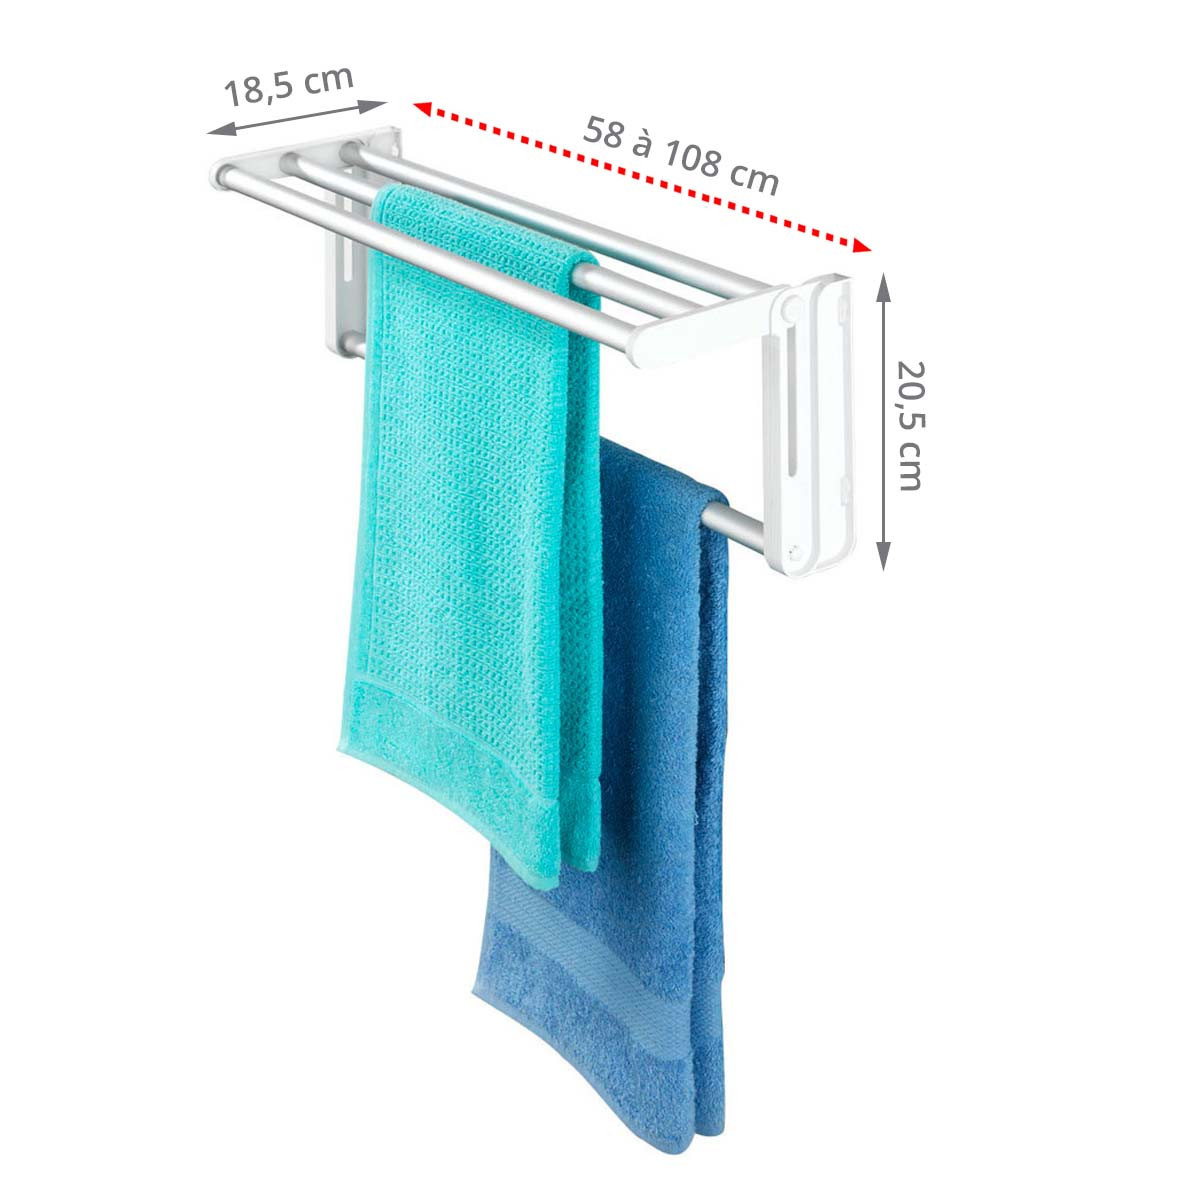 Etendoir Support Porte-vêtements sèche-linge radiateur balcon